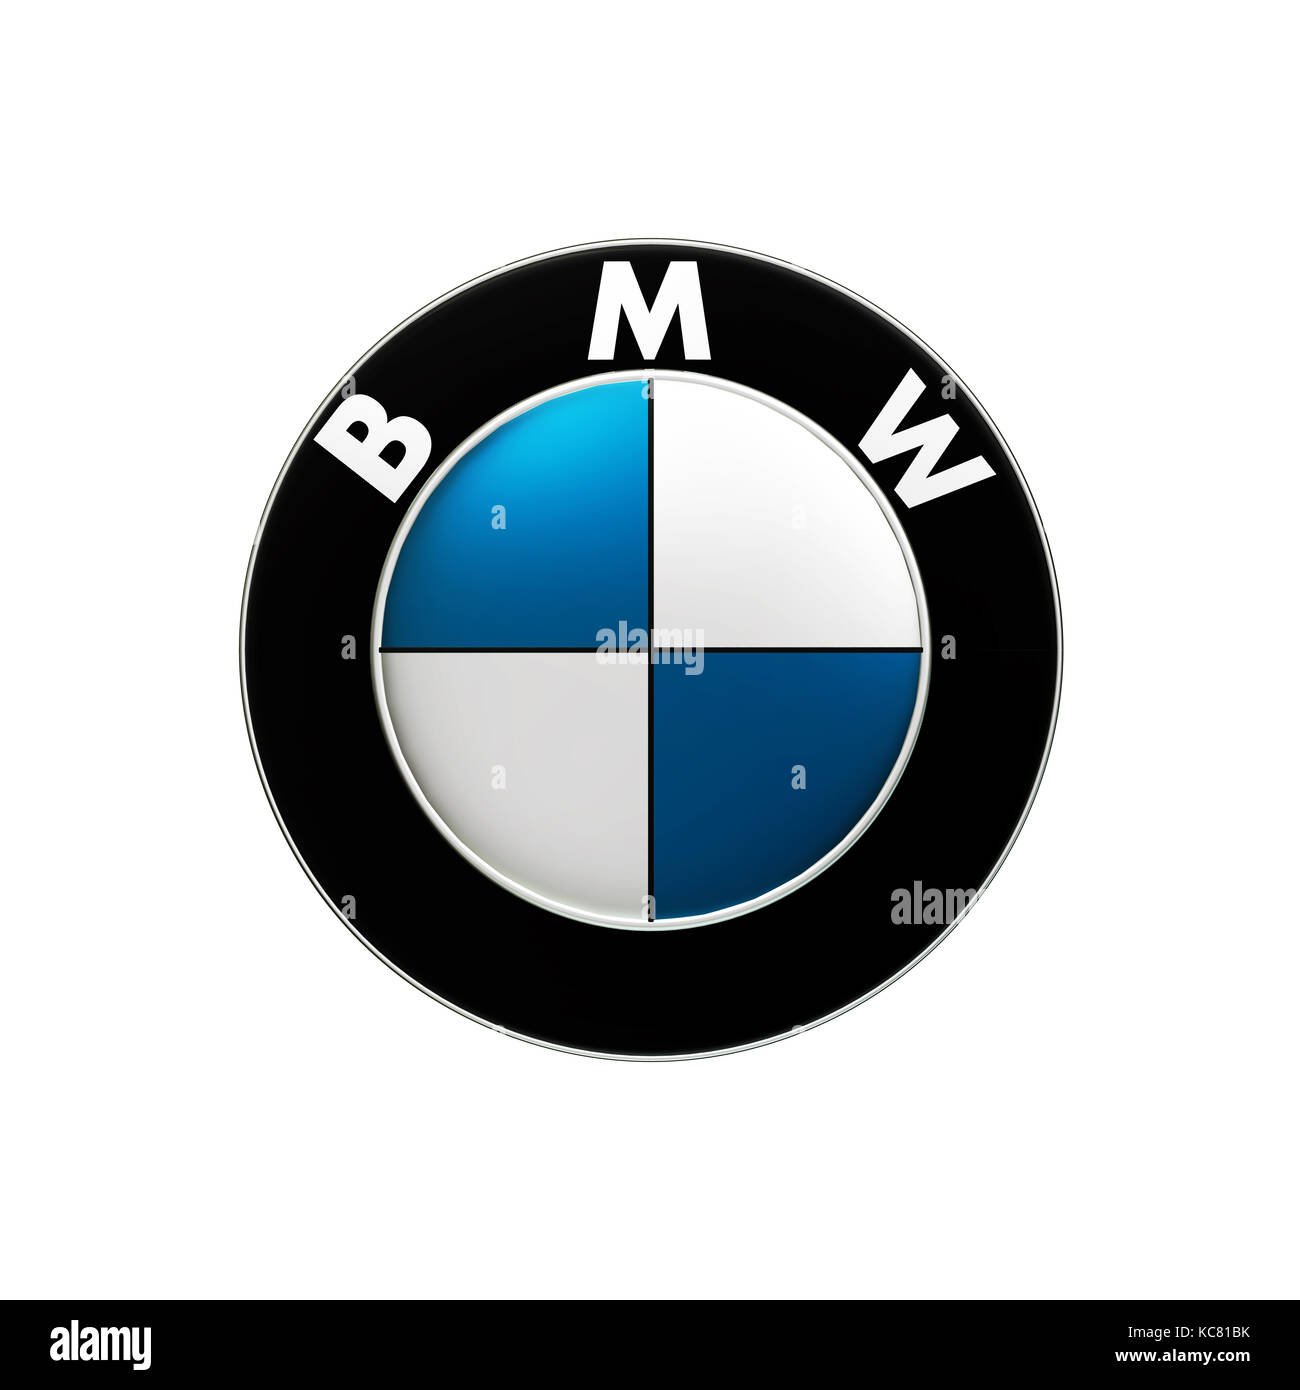 Taipeh, Taiwan - 3. Oktober 2017: BMW ist ein deutscher Automobilhersteller, der das BMW-Logo wiedergibt Stockfoto